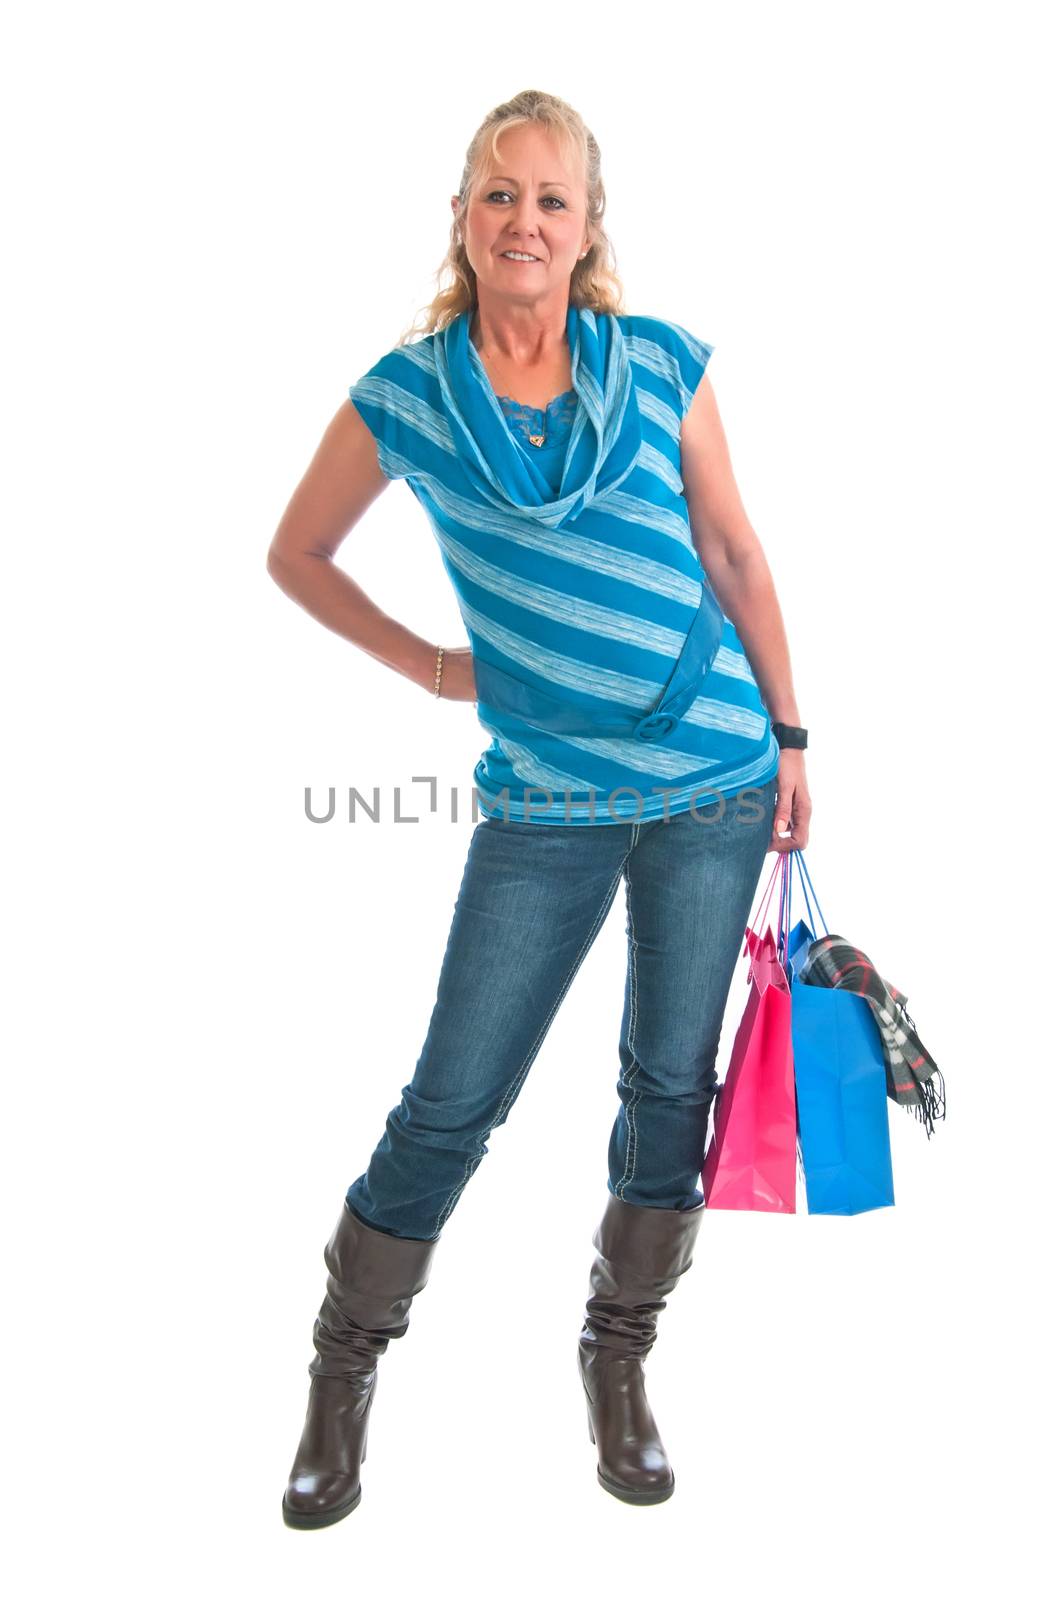 Pretty Woman Shopper by rcarner